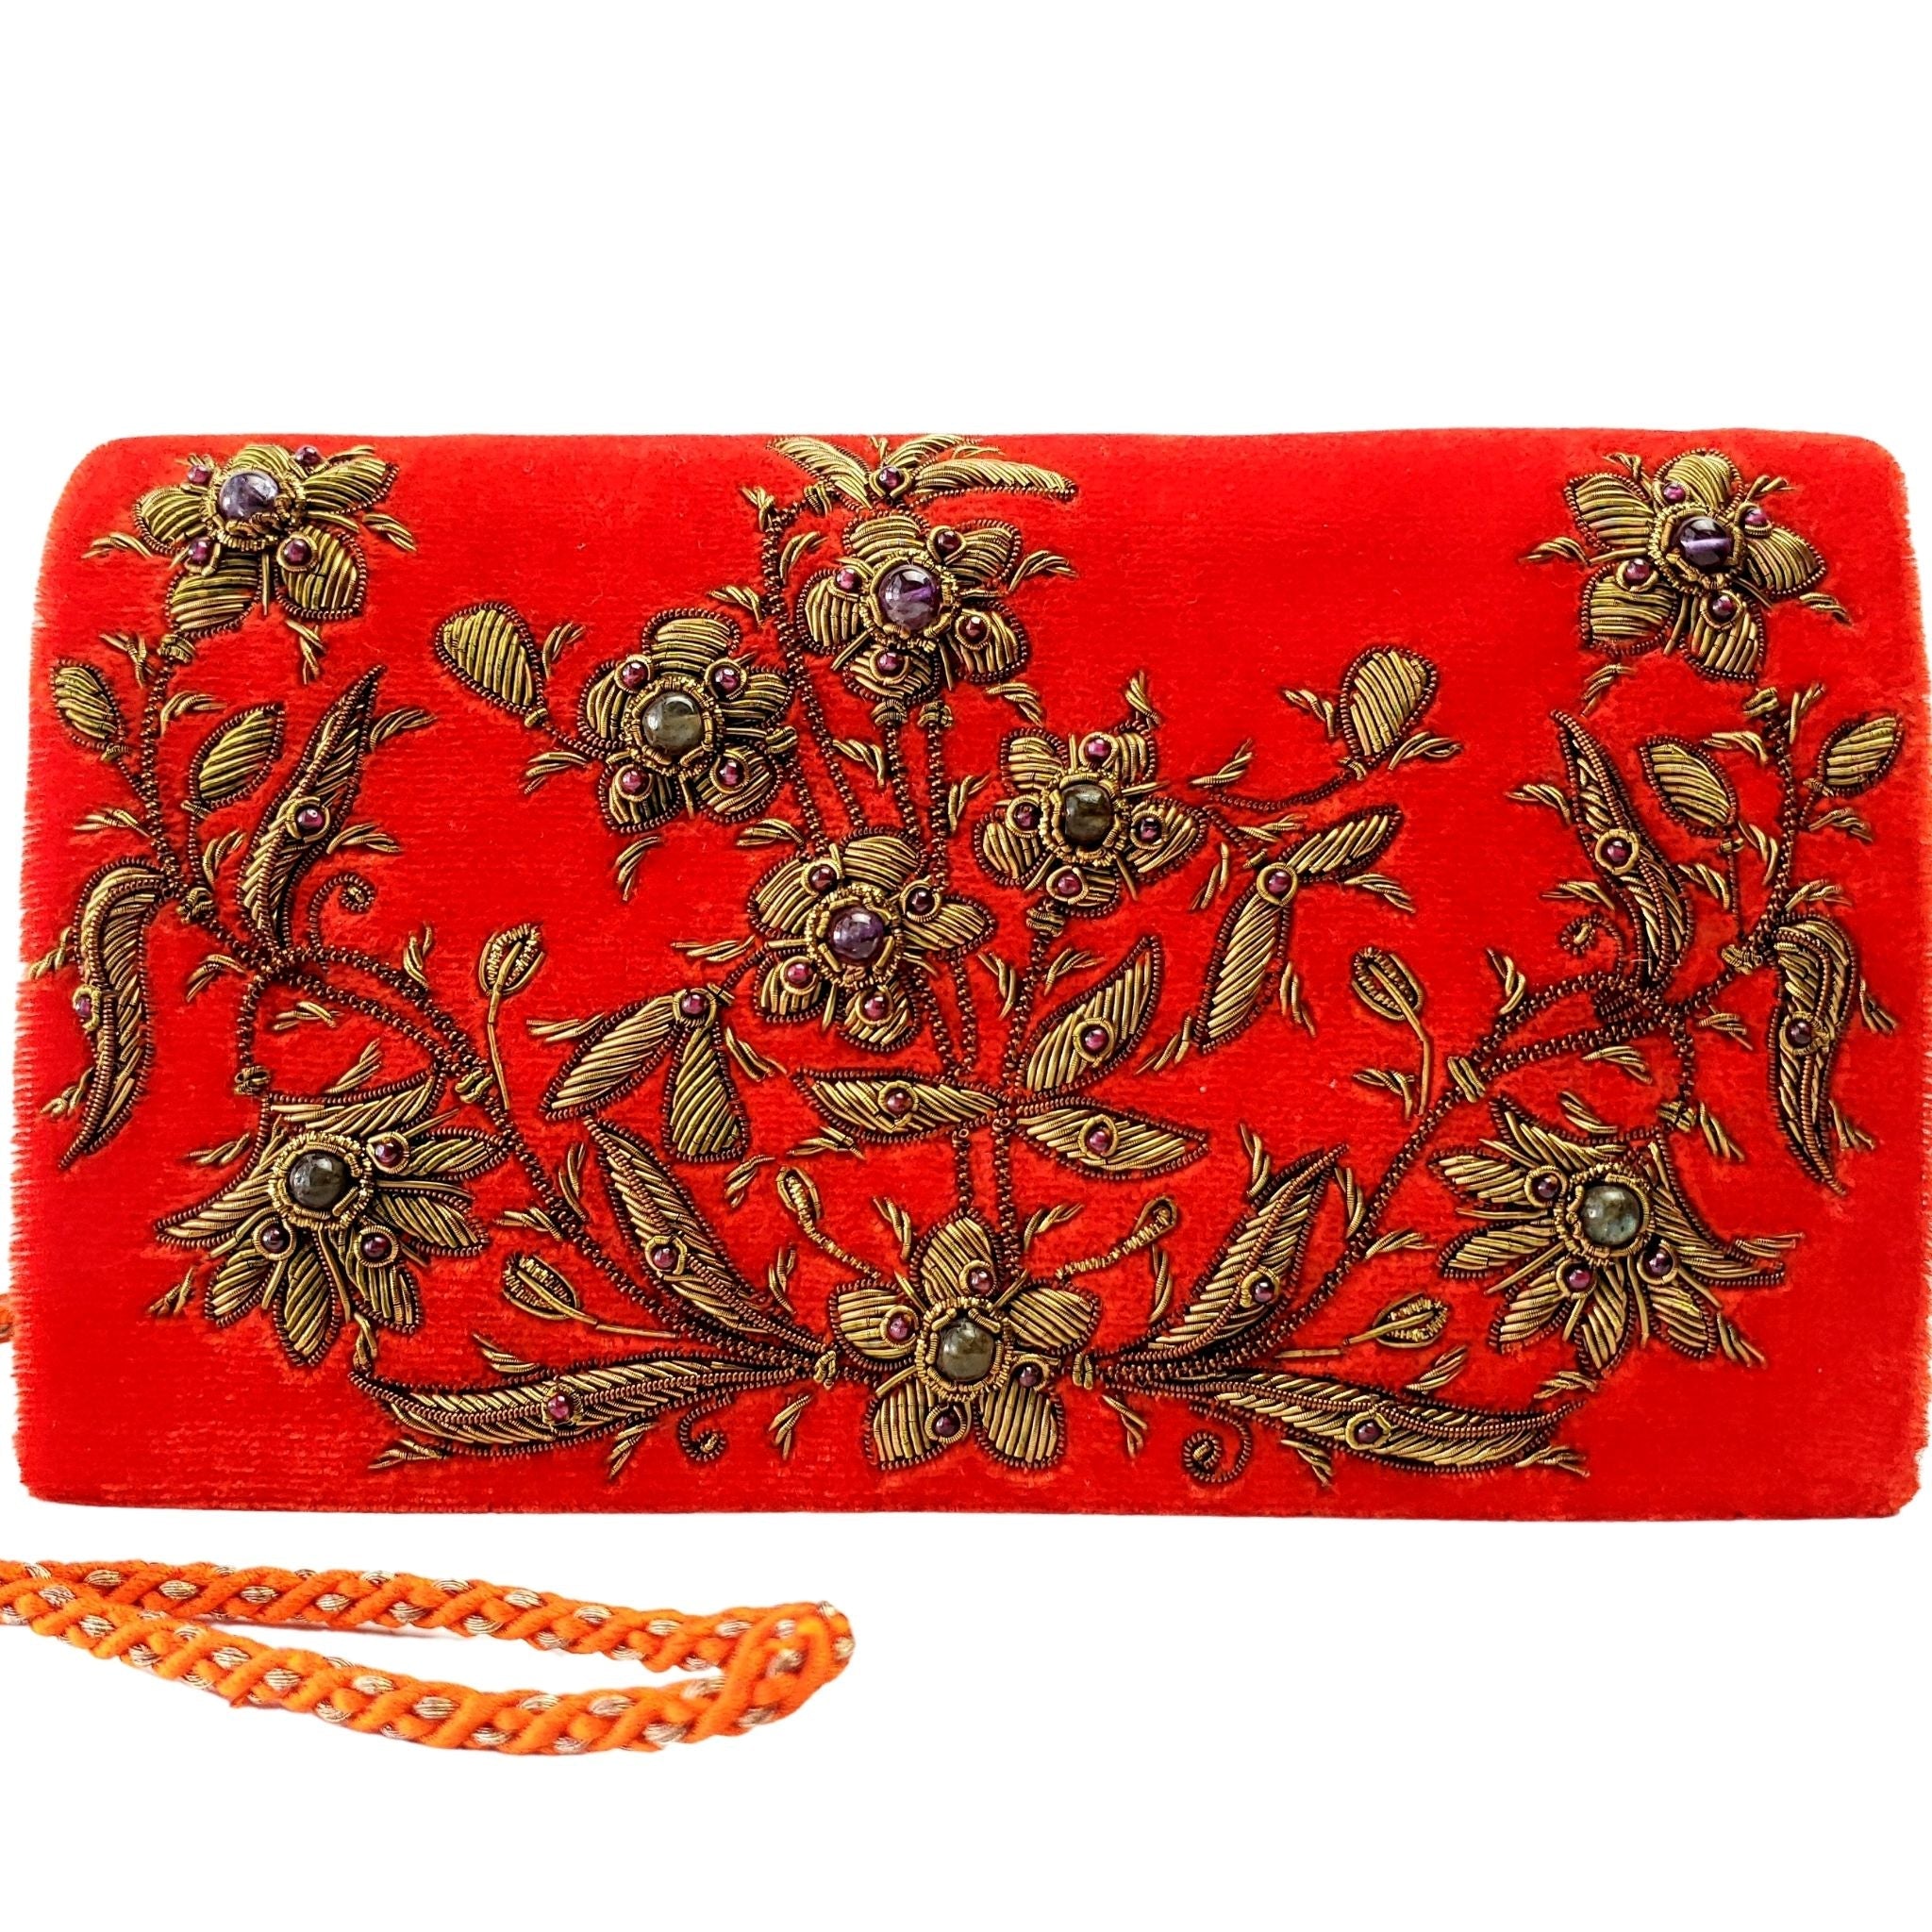 Cassia Floral Embroidered Handbag, Vegan Leather Embellished